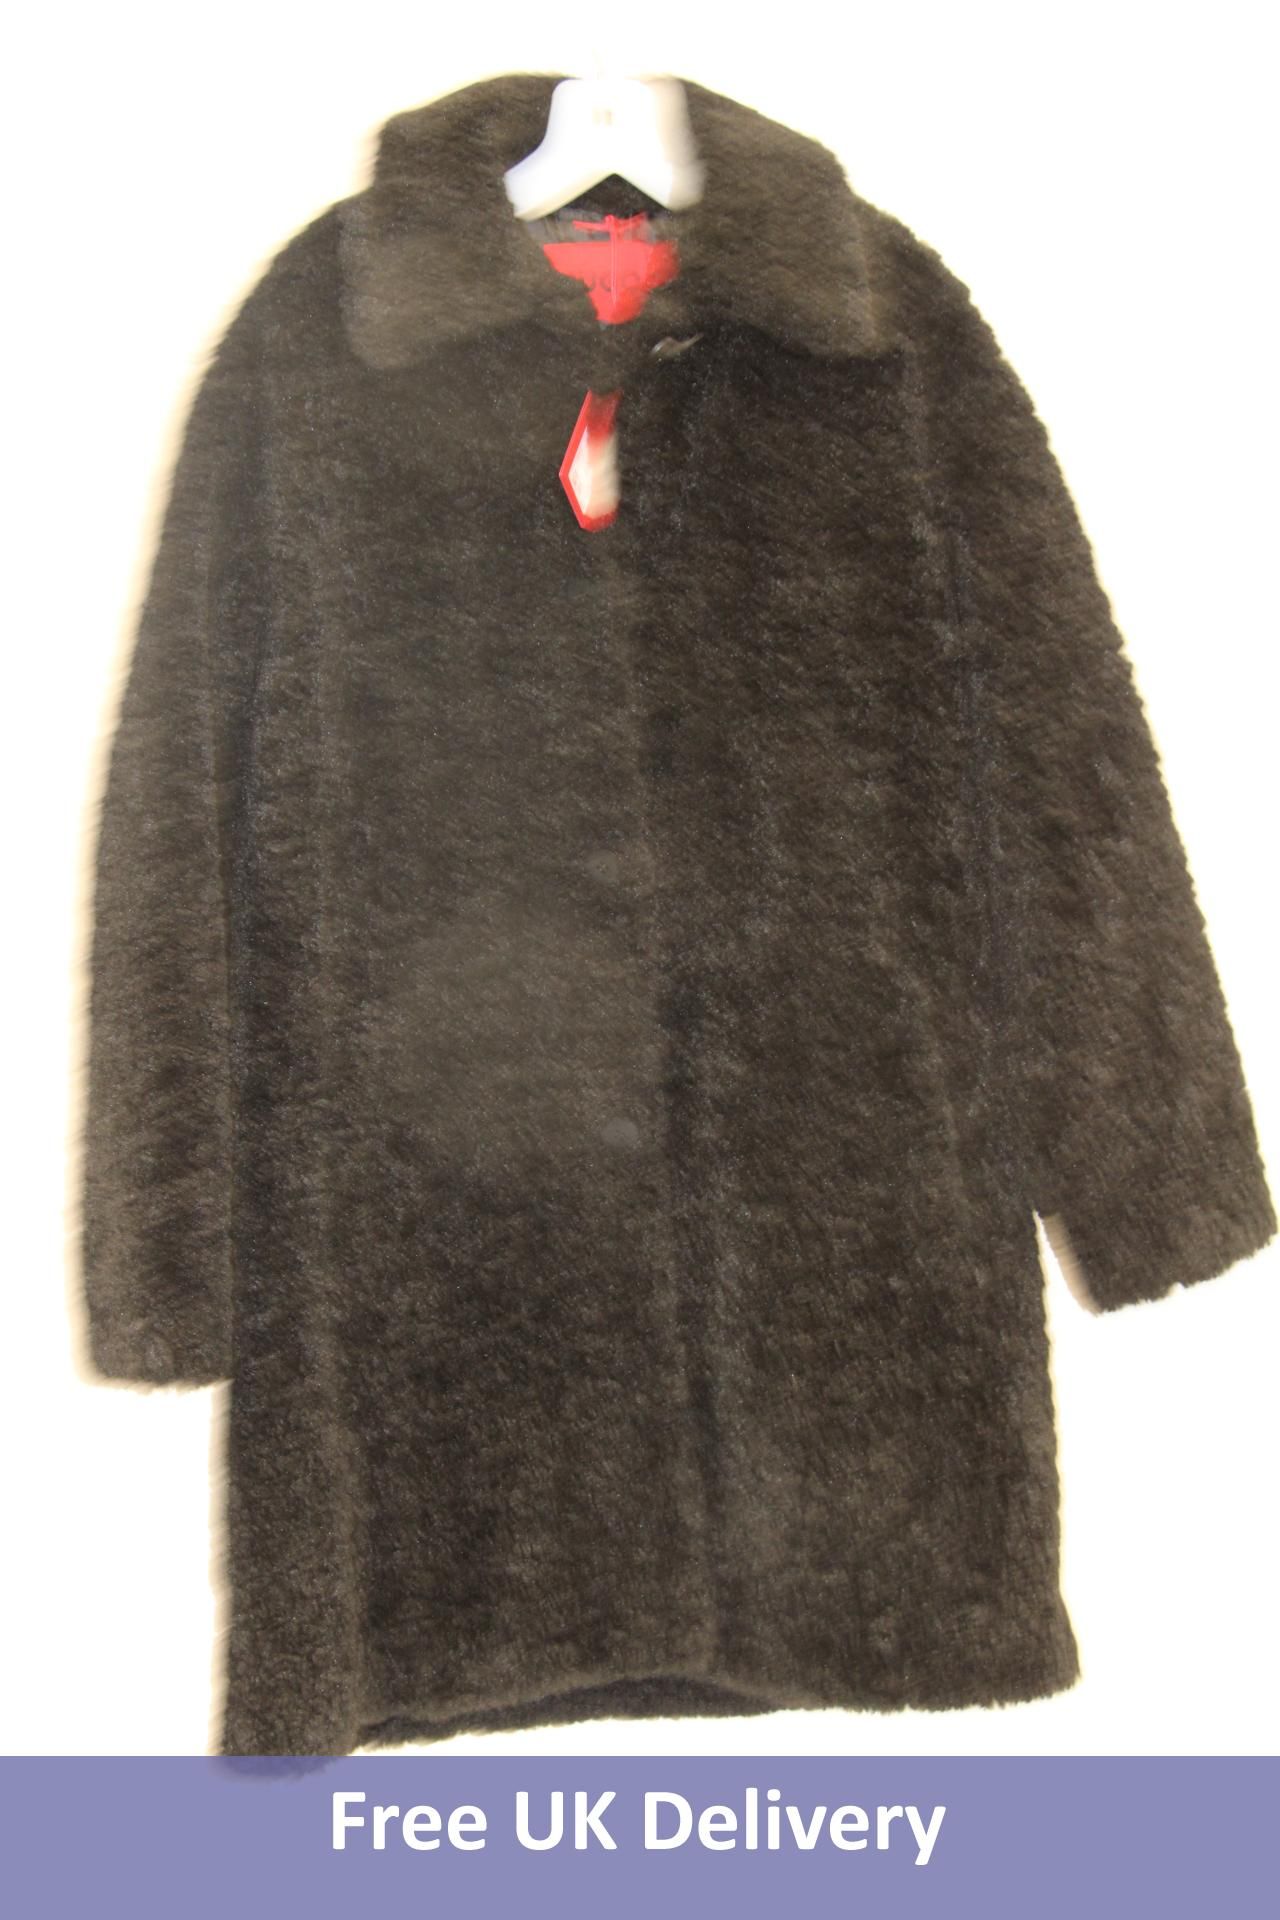 Hugo Mybell-1 Coat, Black, UK Size 10